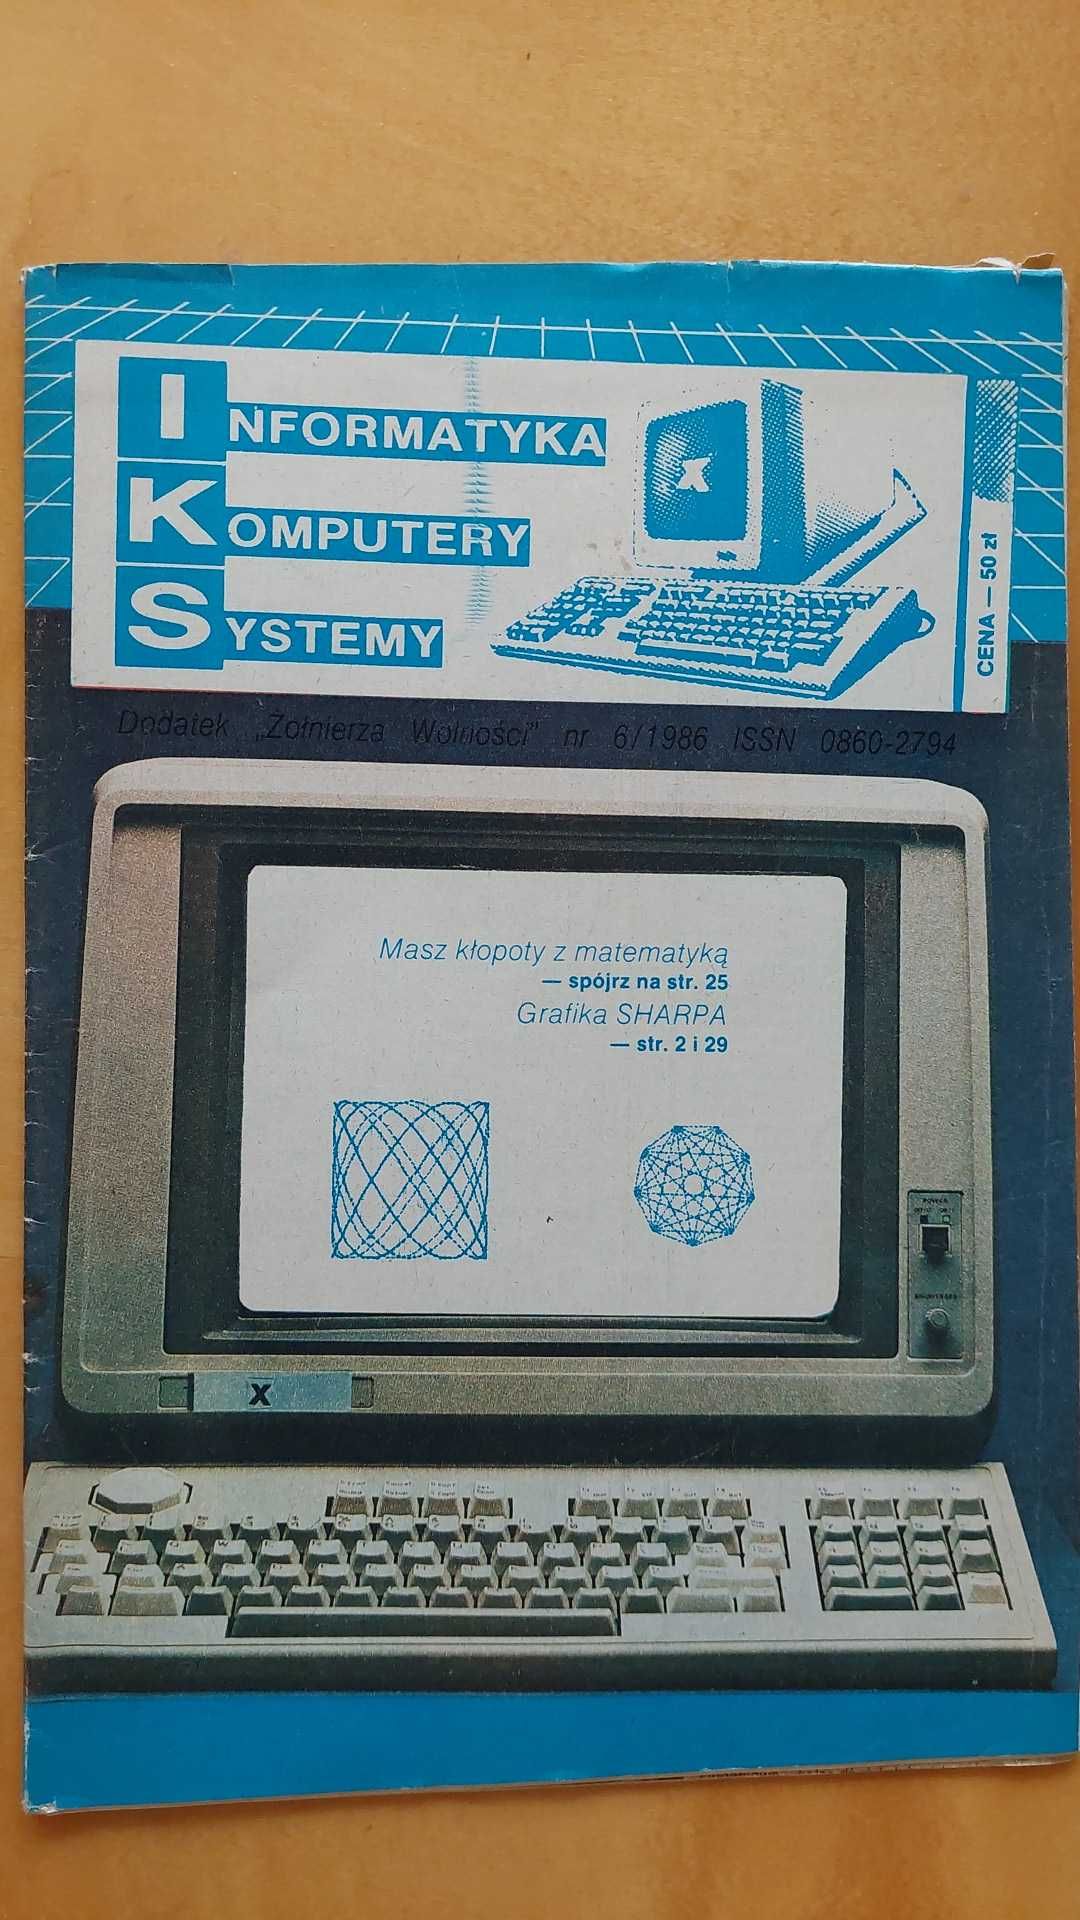 IKS Informatyka Komputery Systemy nr 6/1986